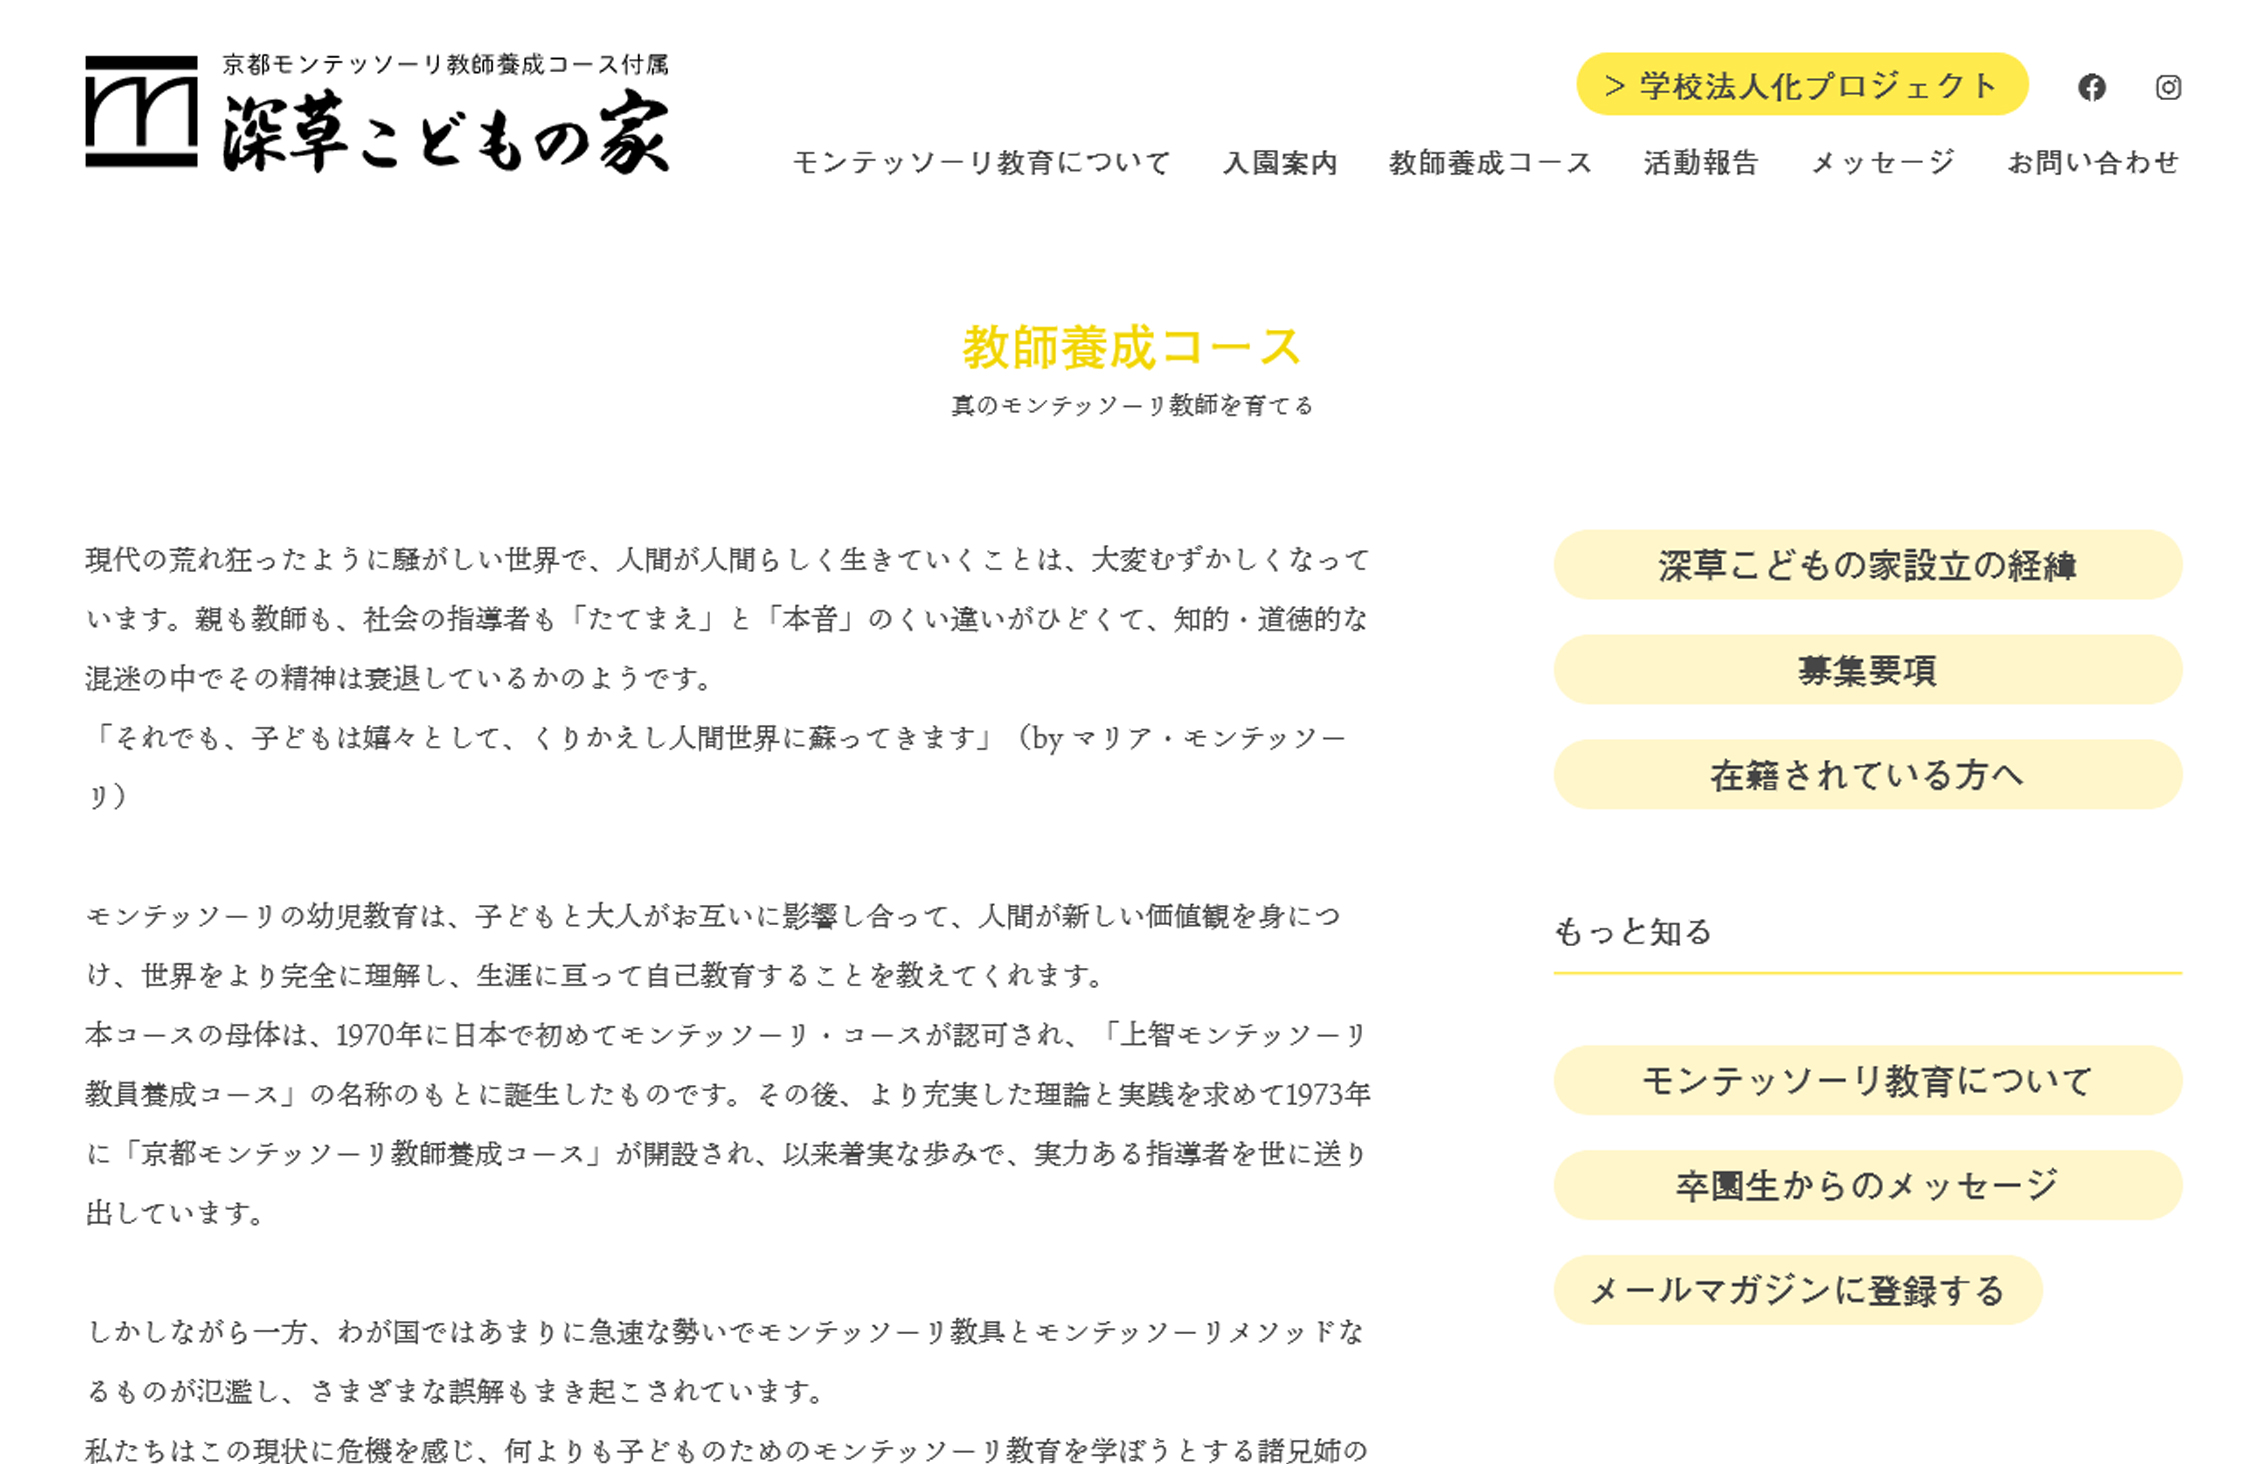 京都モンテッソーリ教師養成コースのホームページ